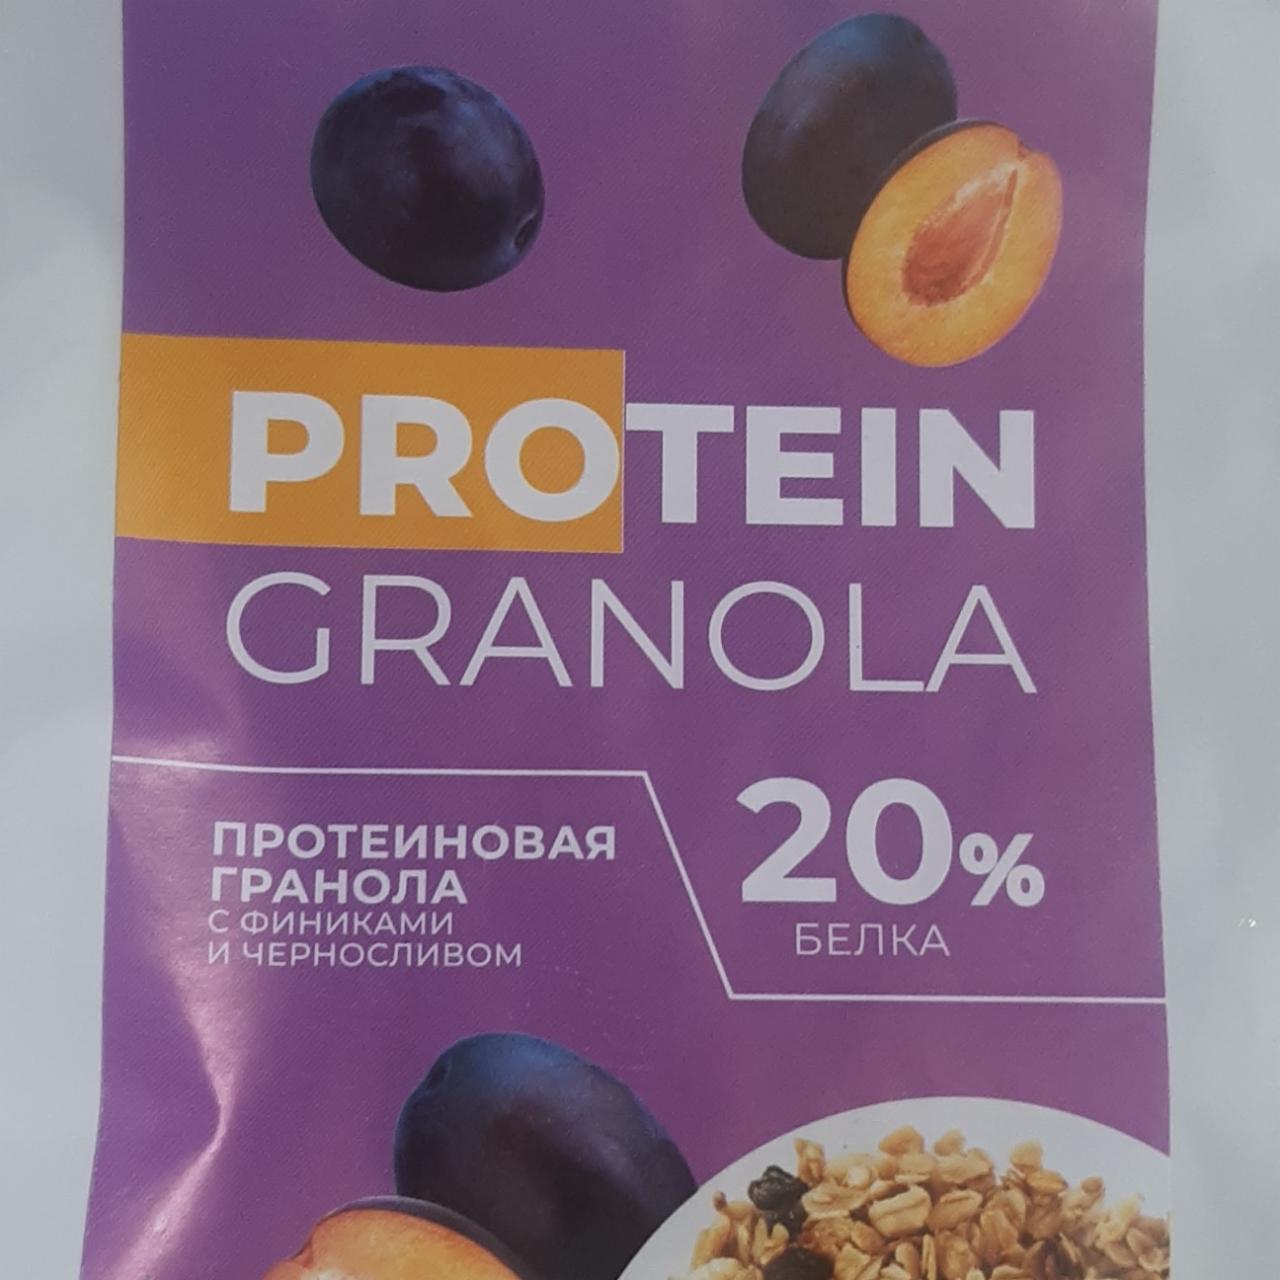 Фото - протеин с финиками и черносливом Granola Protein